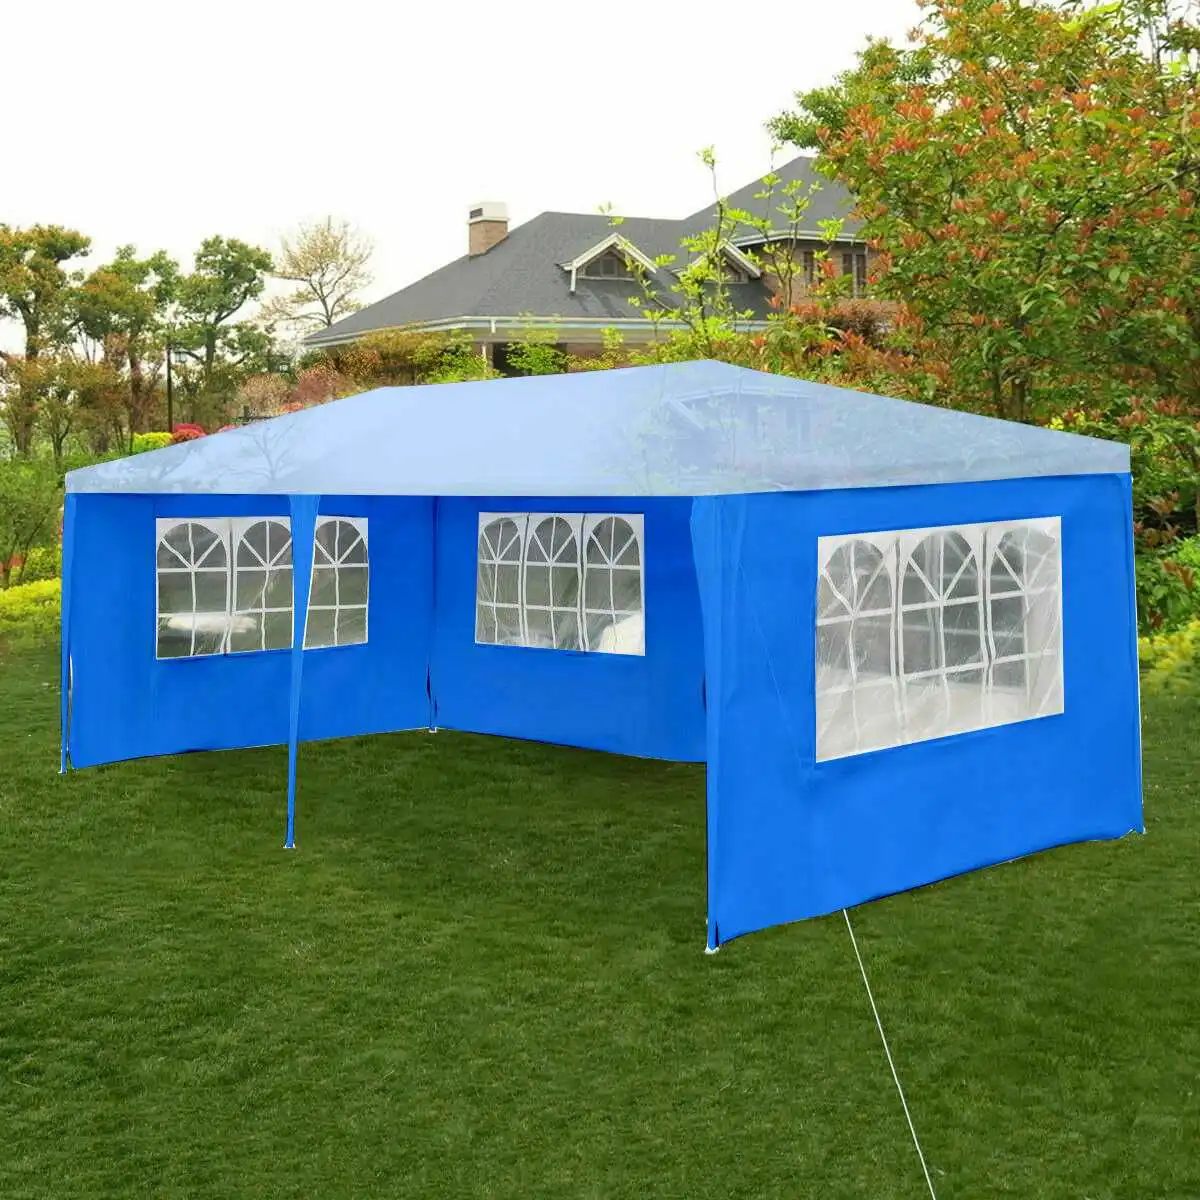 Ткань Оксфорд вечерние палатки стеновые стороны водонепроницаемый сад патио открытый навес 3x6 м солнце стены навес от солнца укрытие брезент боковины солнцезащитный козырек - Цвет: Blue